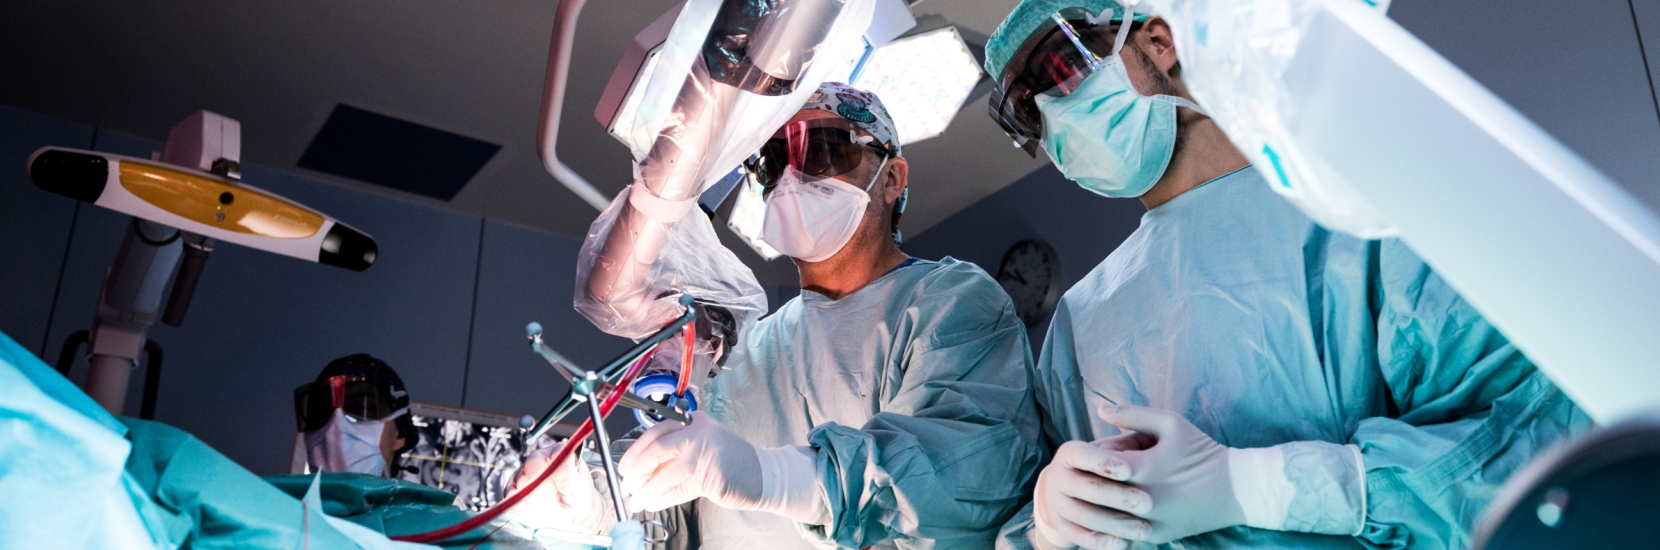 La transformation digitale au cœur de la neurochirurgie moderne : vers des traitements toujours plus personnalisés 